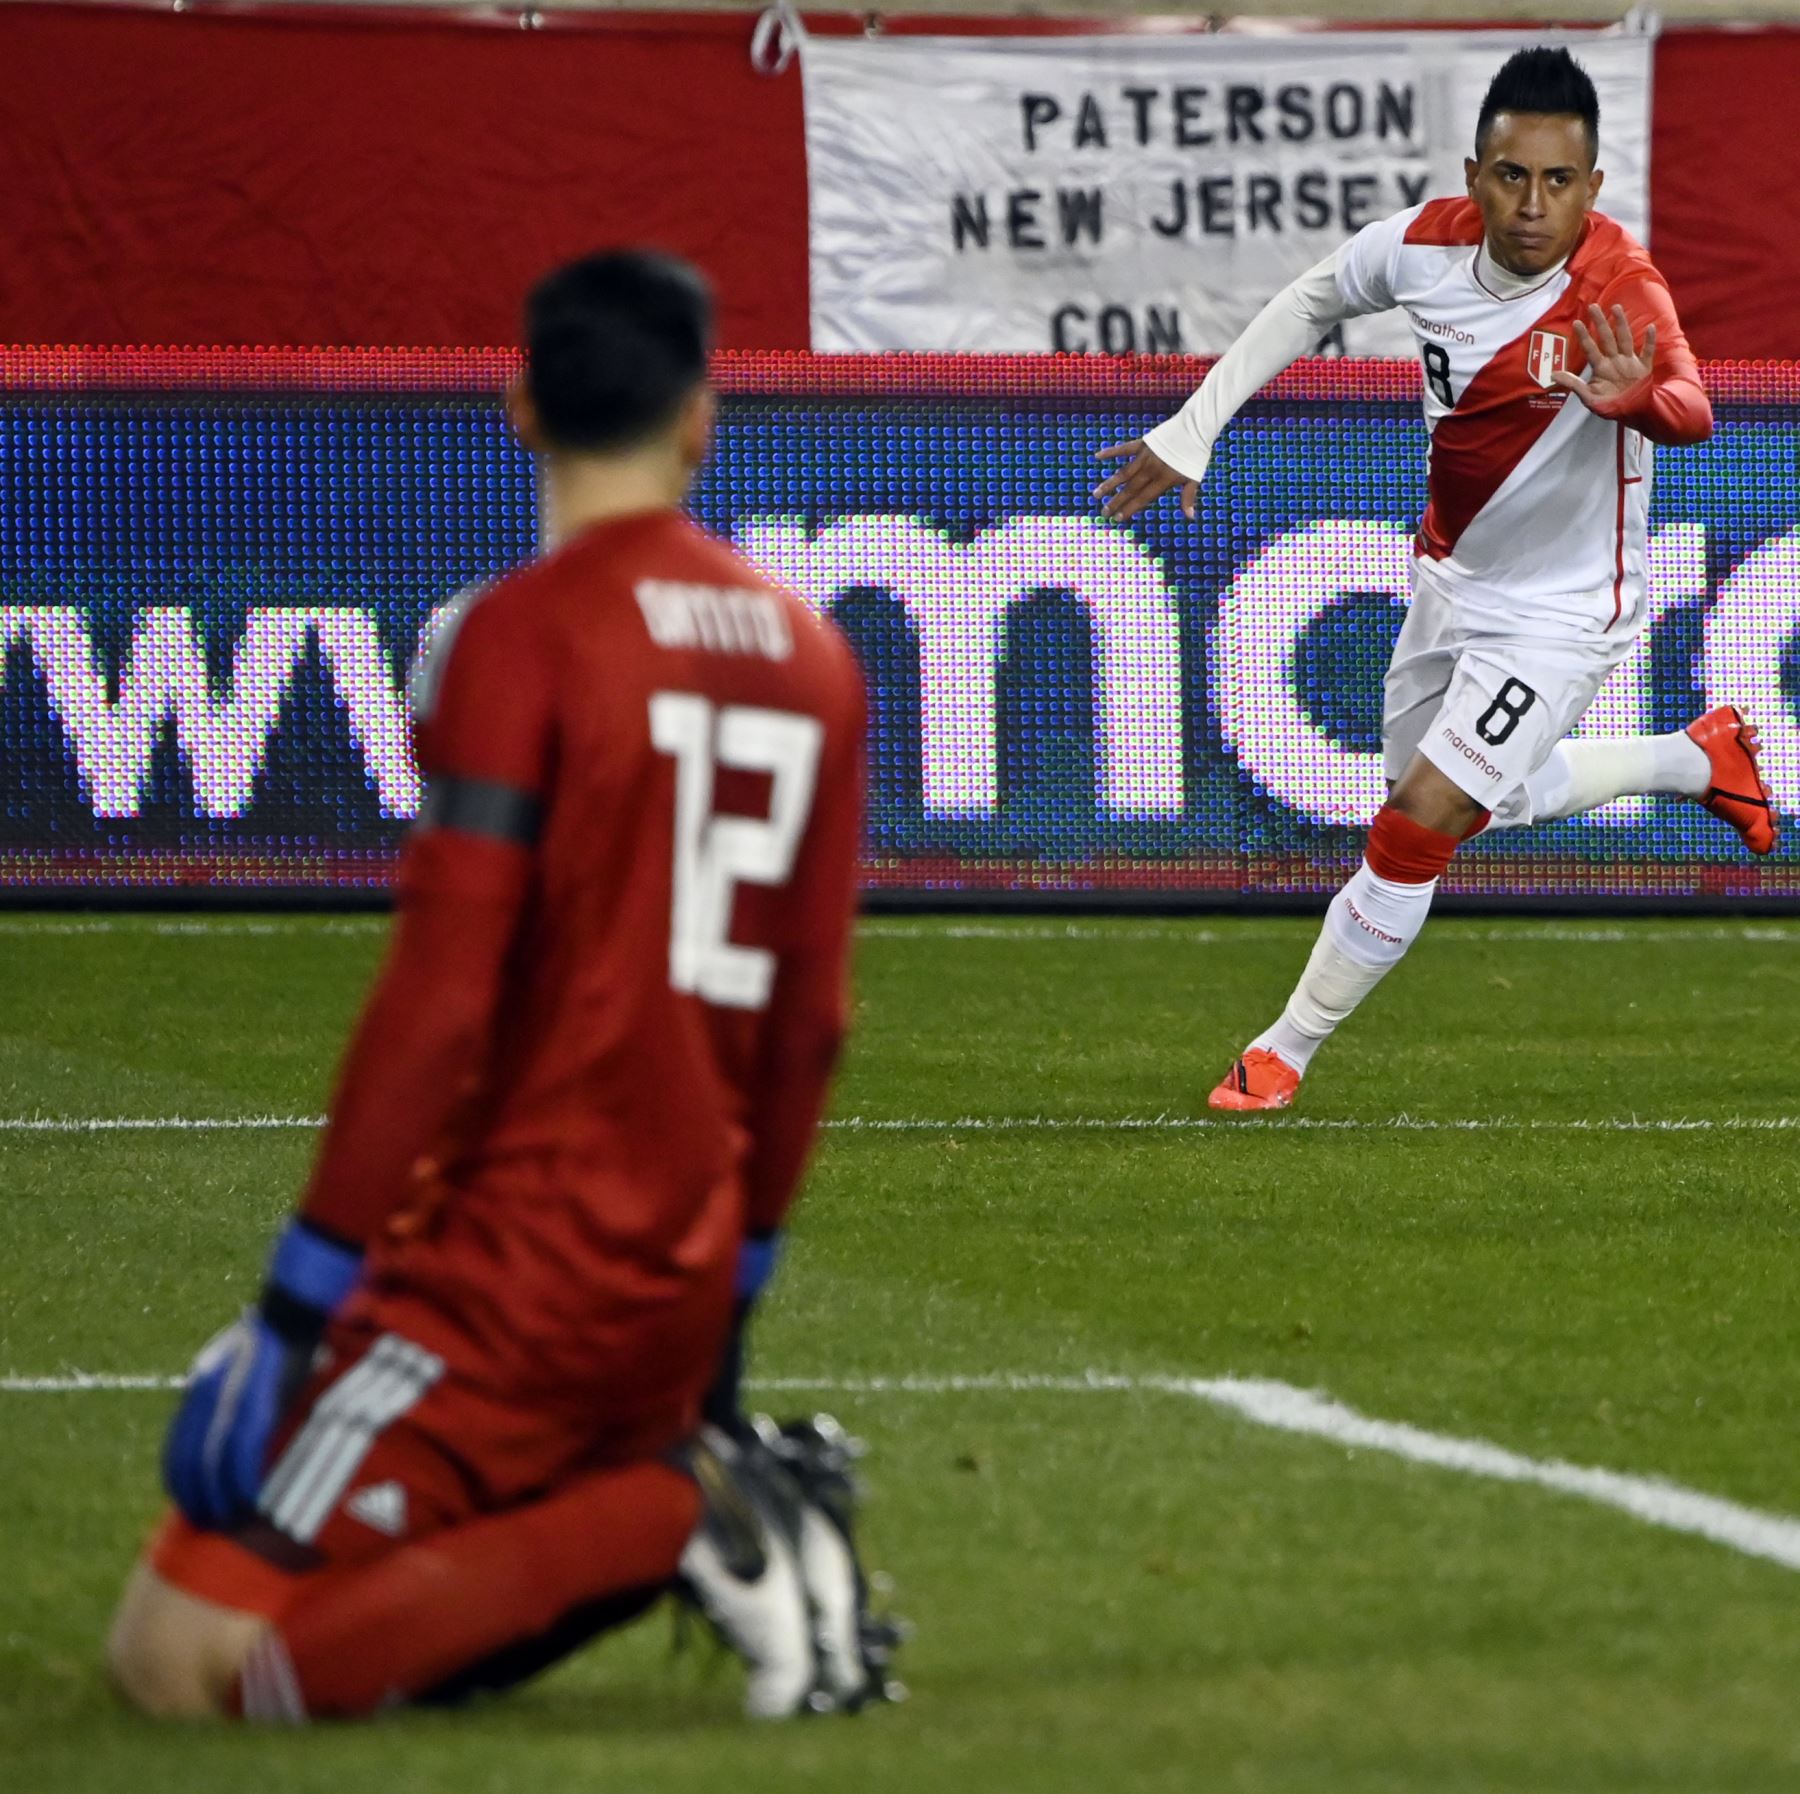 Christian Cueva (C) de Perú celebra después de marcar contra Paraguay durante el partido amistoso internacional entre Perú y Paraguay en el Red Bull Arena de Nueva Jersey.Foto:AFP